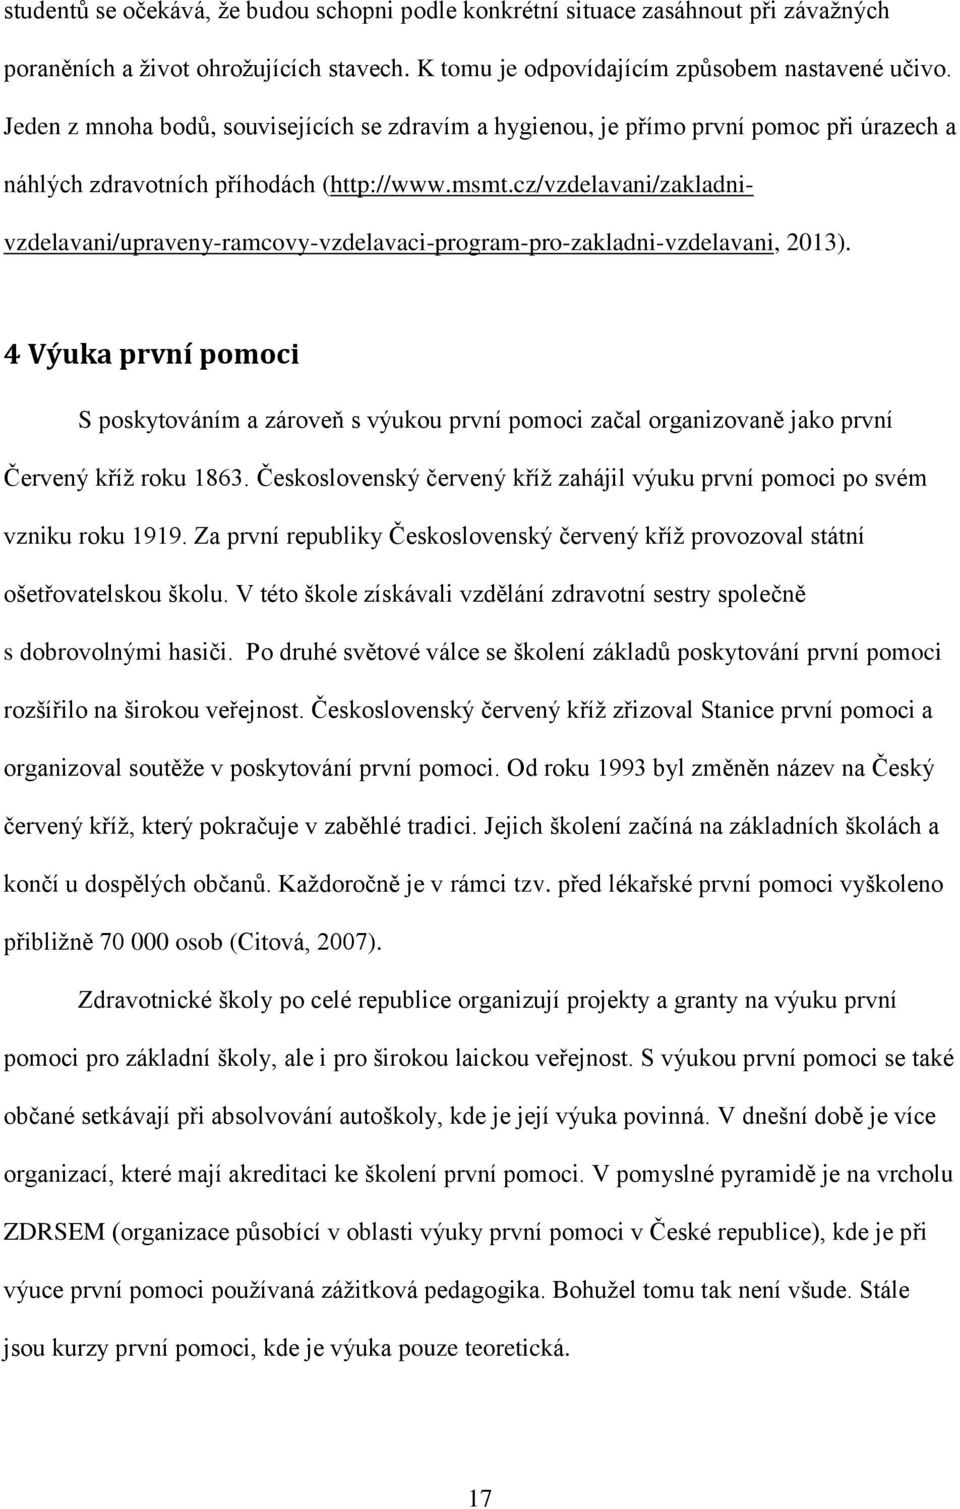 cz/vzdelavani/zakladnivzdelavani/upraveny-ramcovy-vzdelavaci-program-pro-zakladni-vzdelavani, 2013).